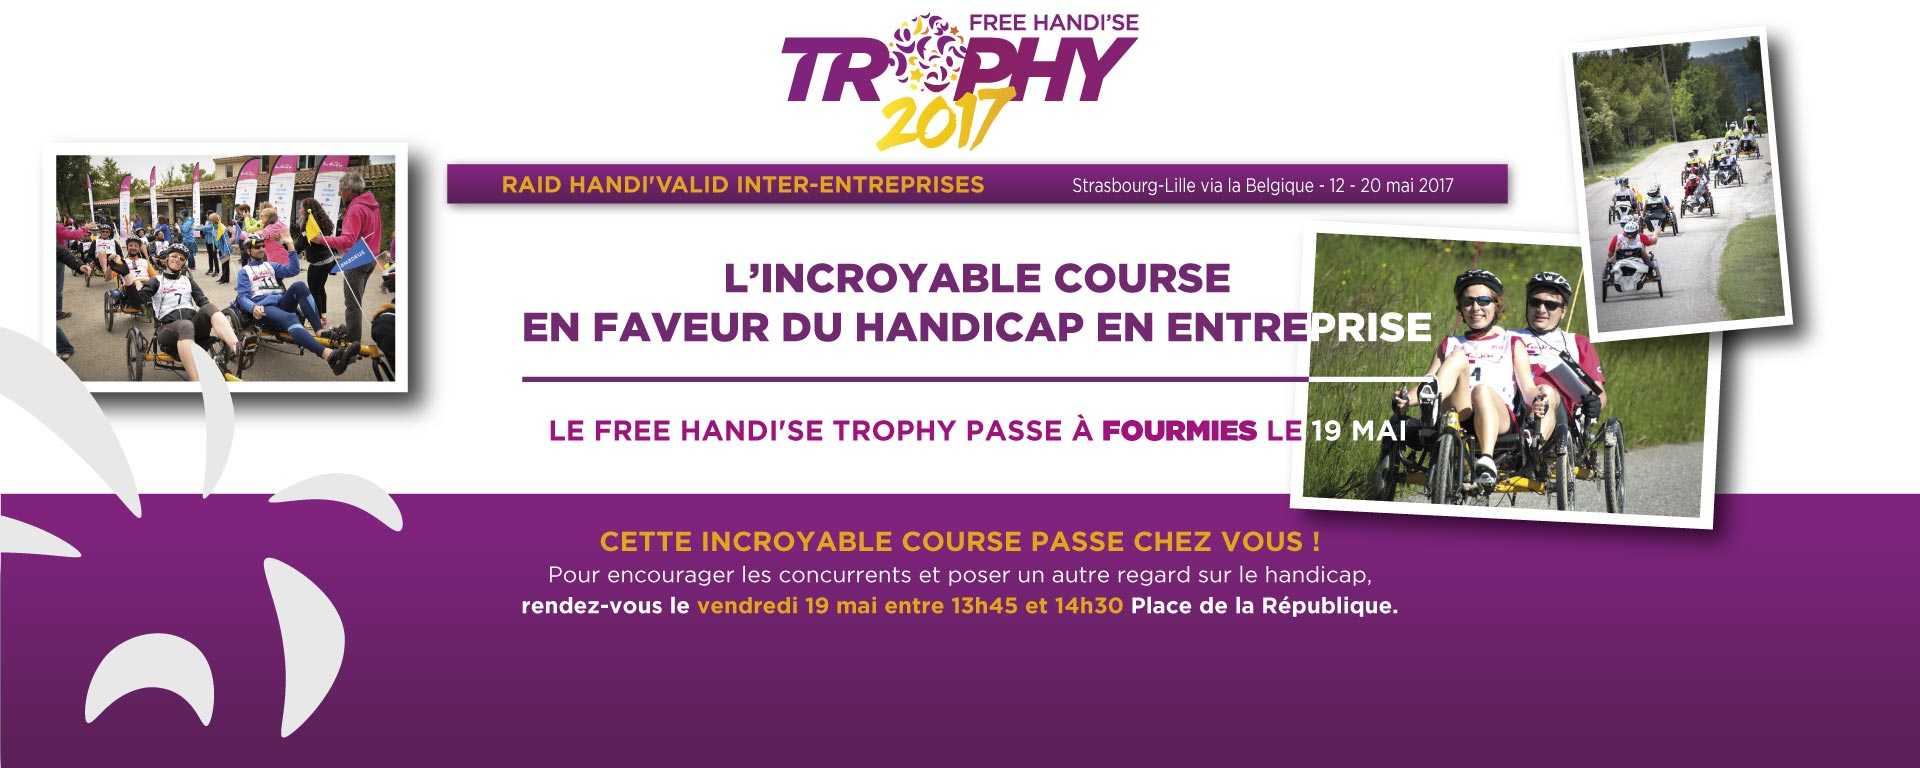 Le Free Handi’se Trophy est un Raid Inter-entreprises Handi'Valid dont la 6ème édition se déroulera du 12 au 20 mai entre Strasbourg et Lille.